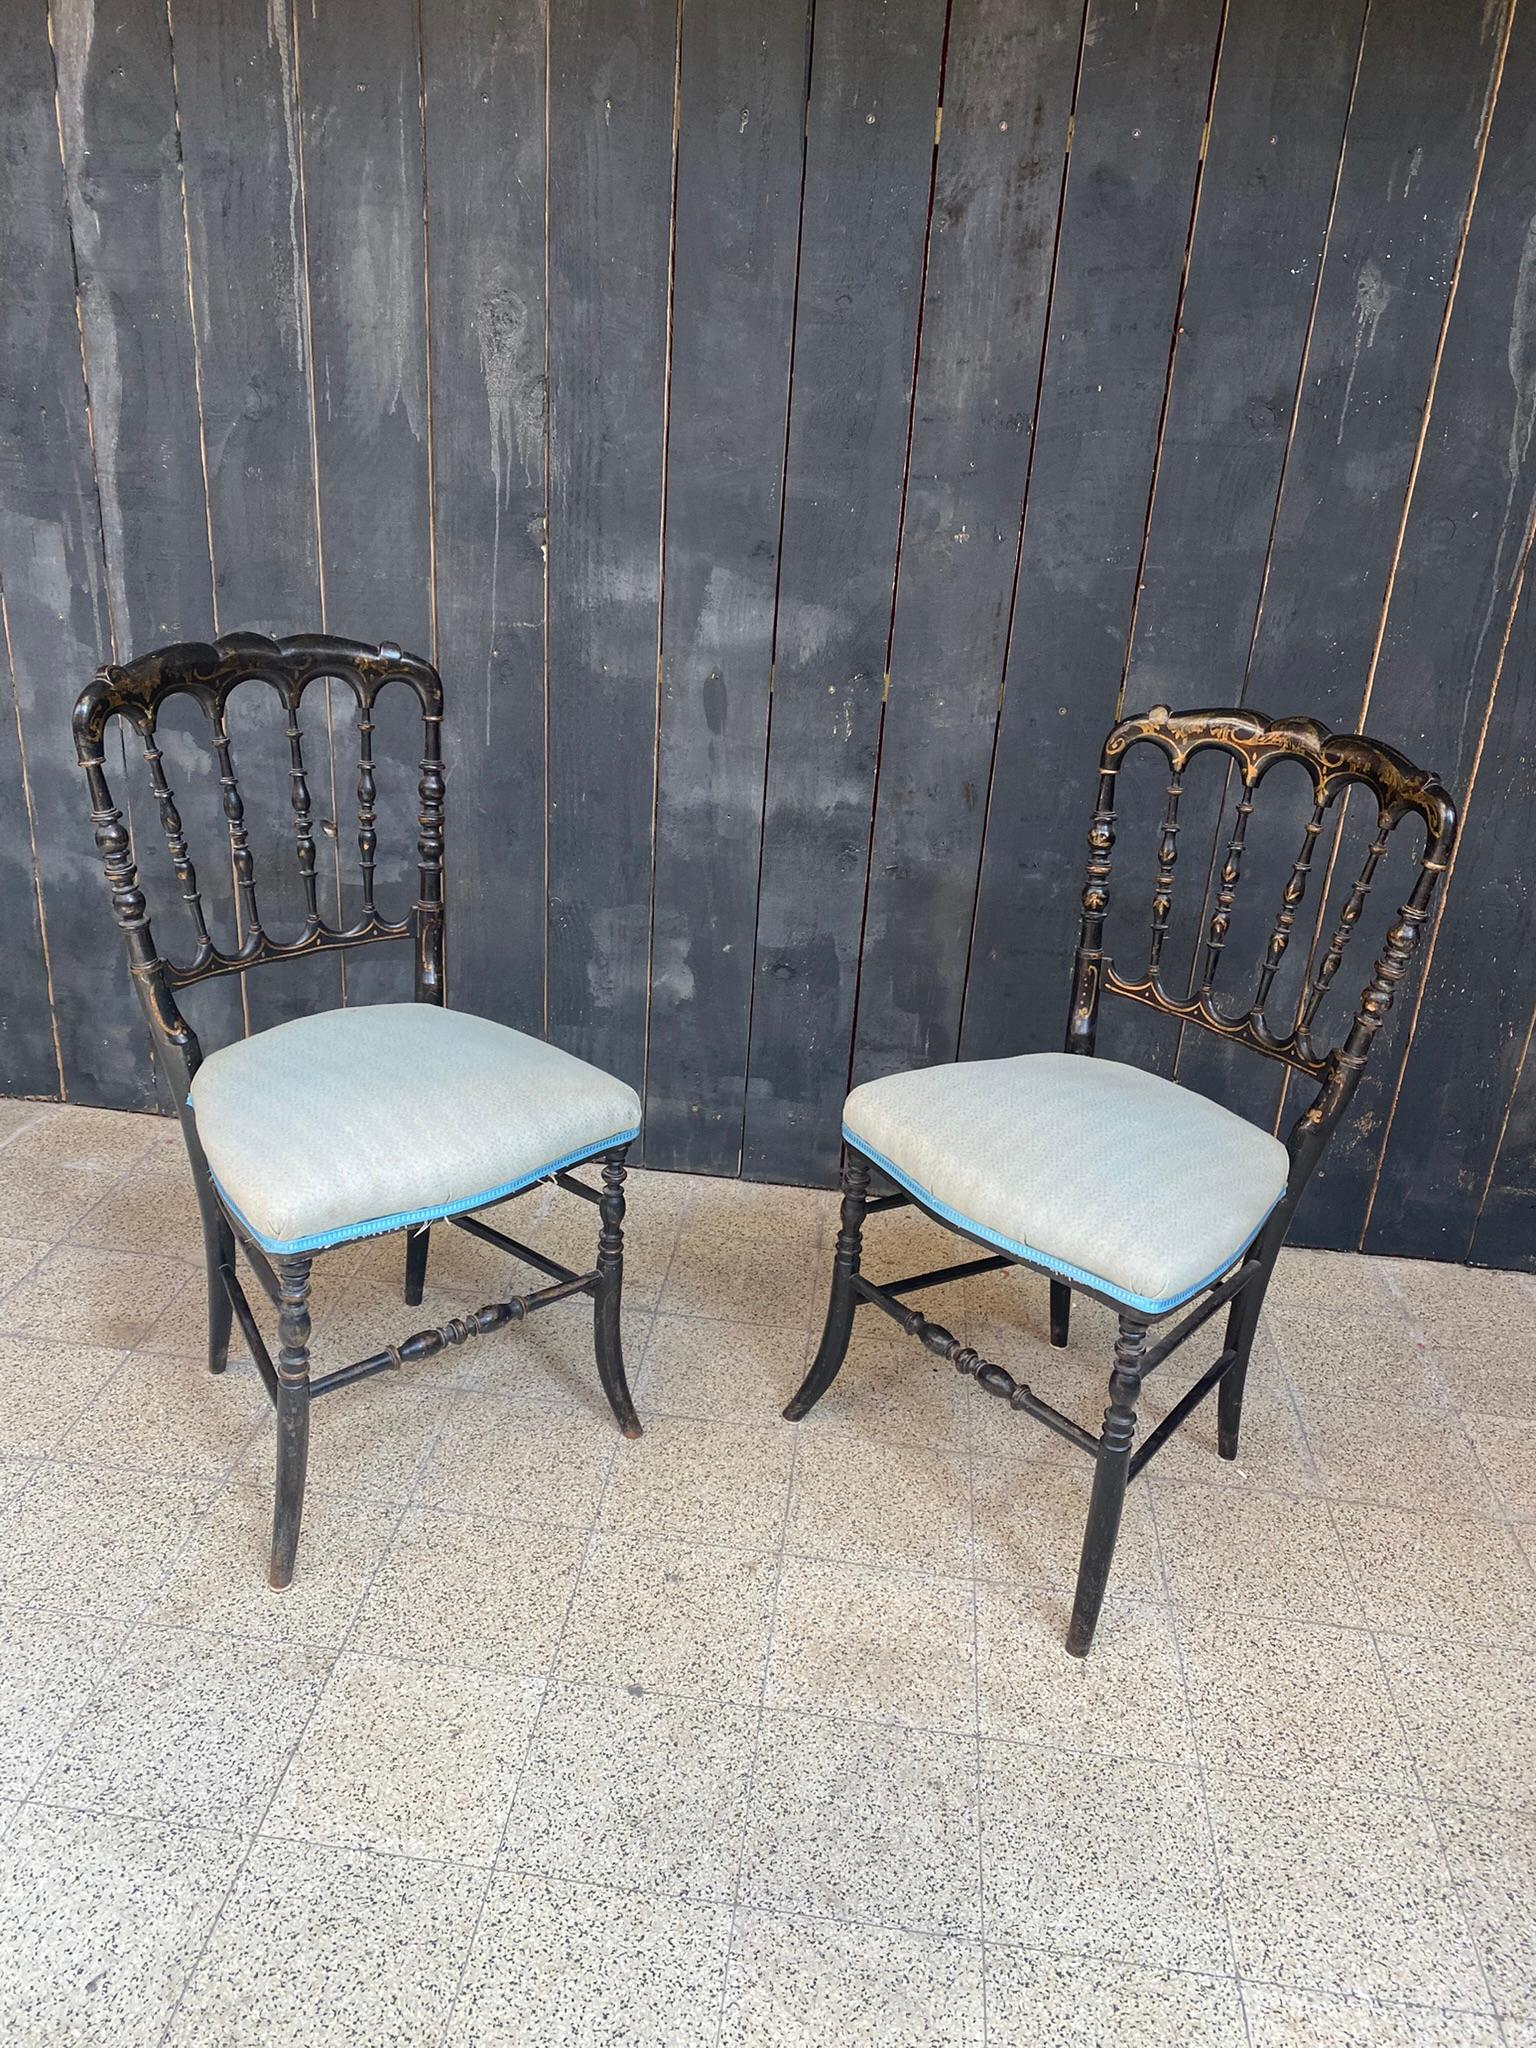 2 chaises originales Napoléon III en ébène, France, années 1850.
Usure et manque de dorure.